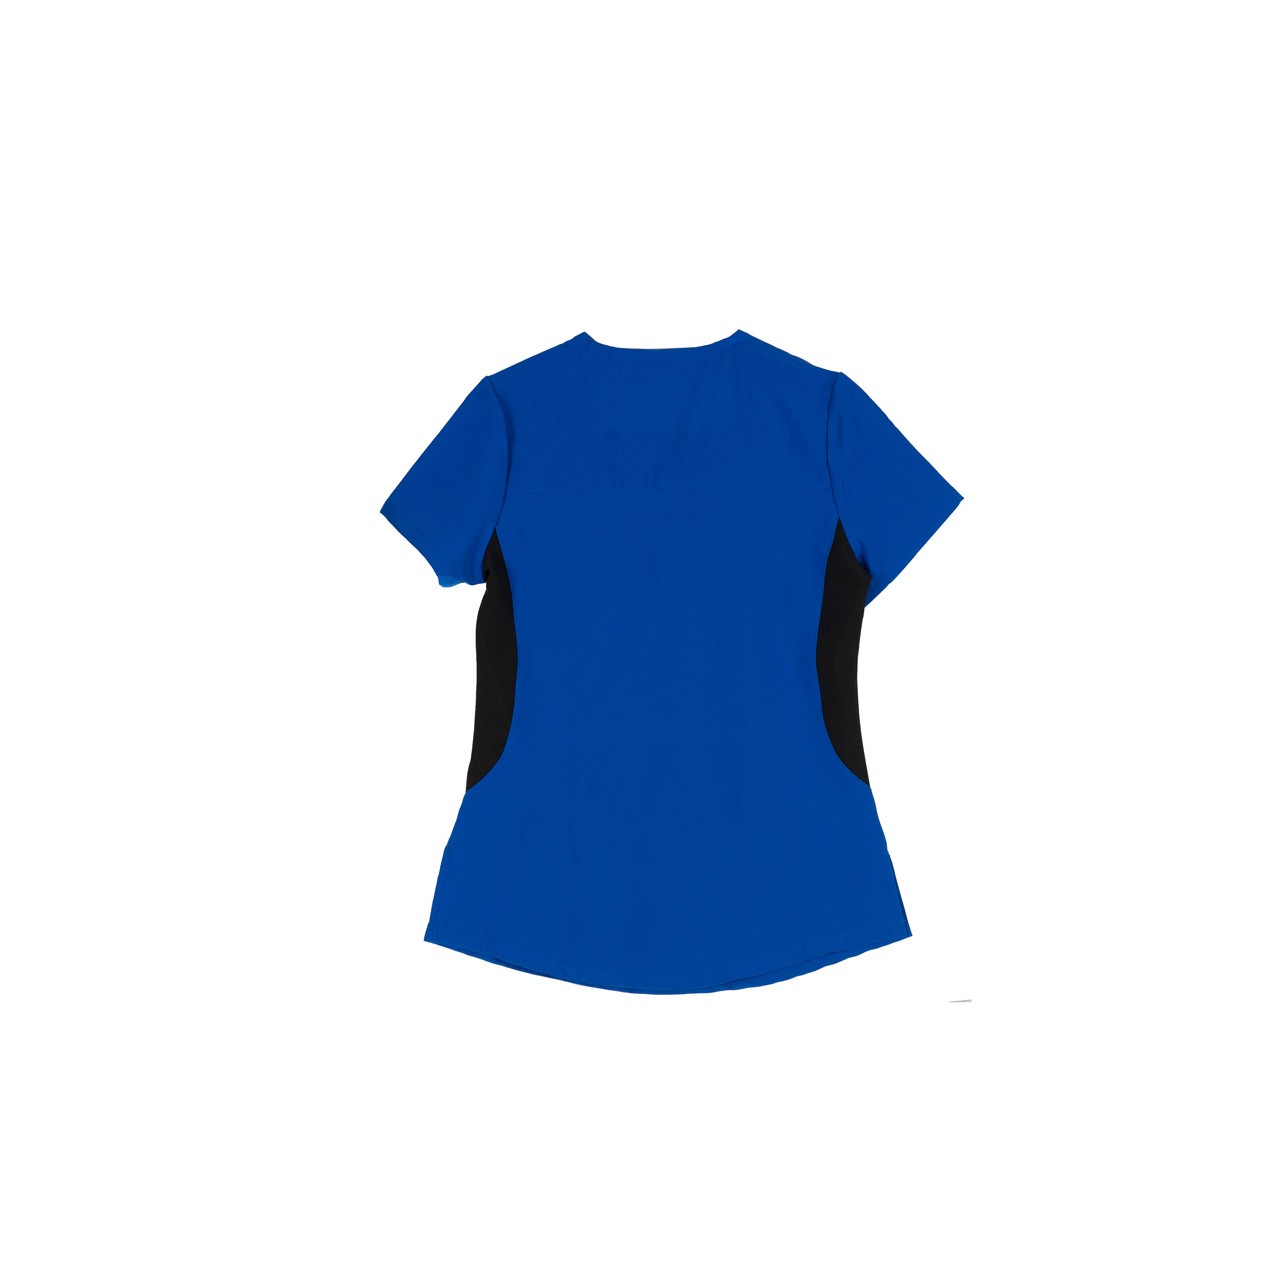 Ιατρική Στολή Γυναικεία Μπλούζα - Παντελόνι (Σετ) Stretch Μπλε